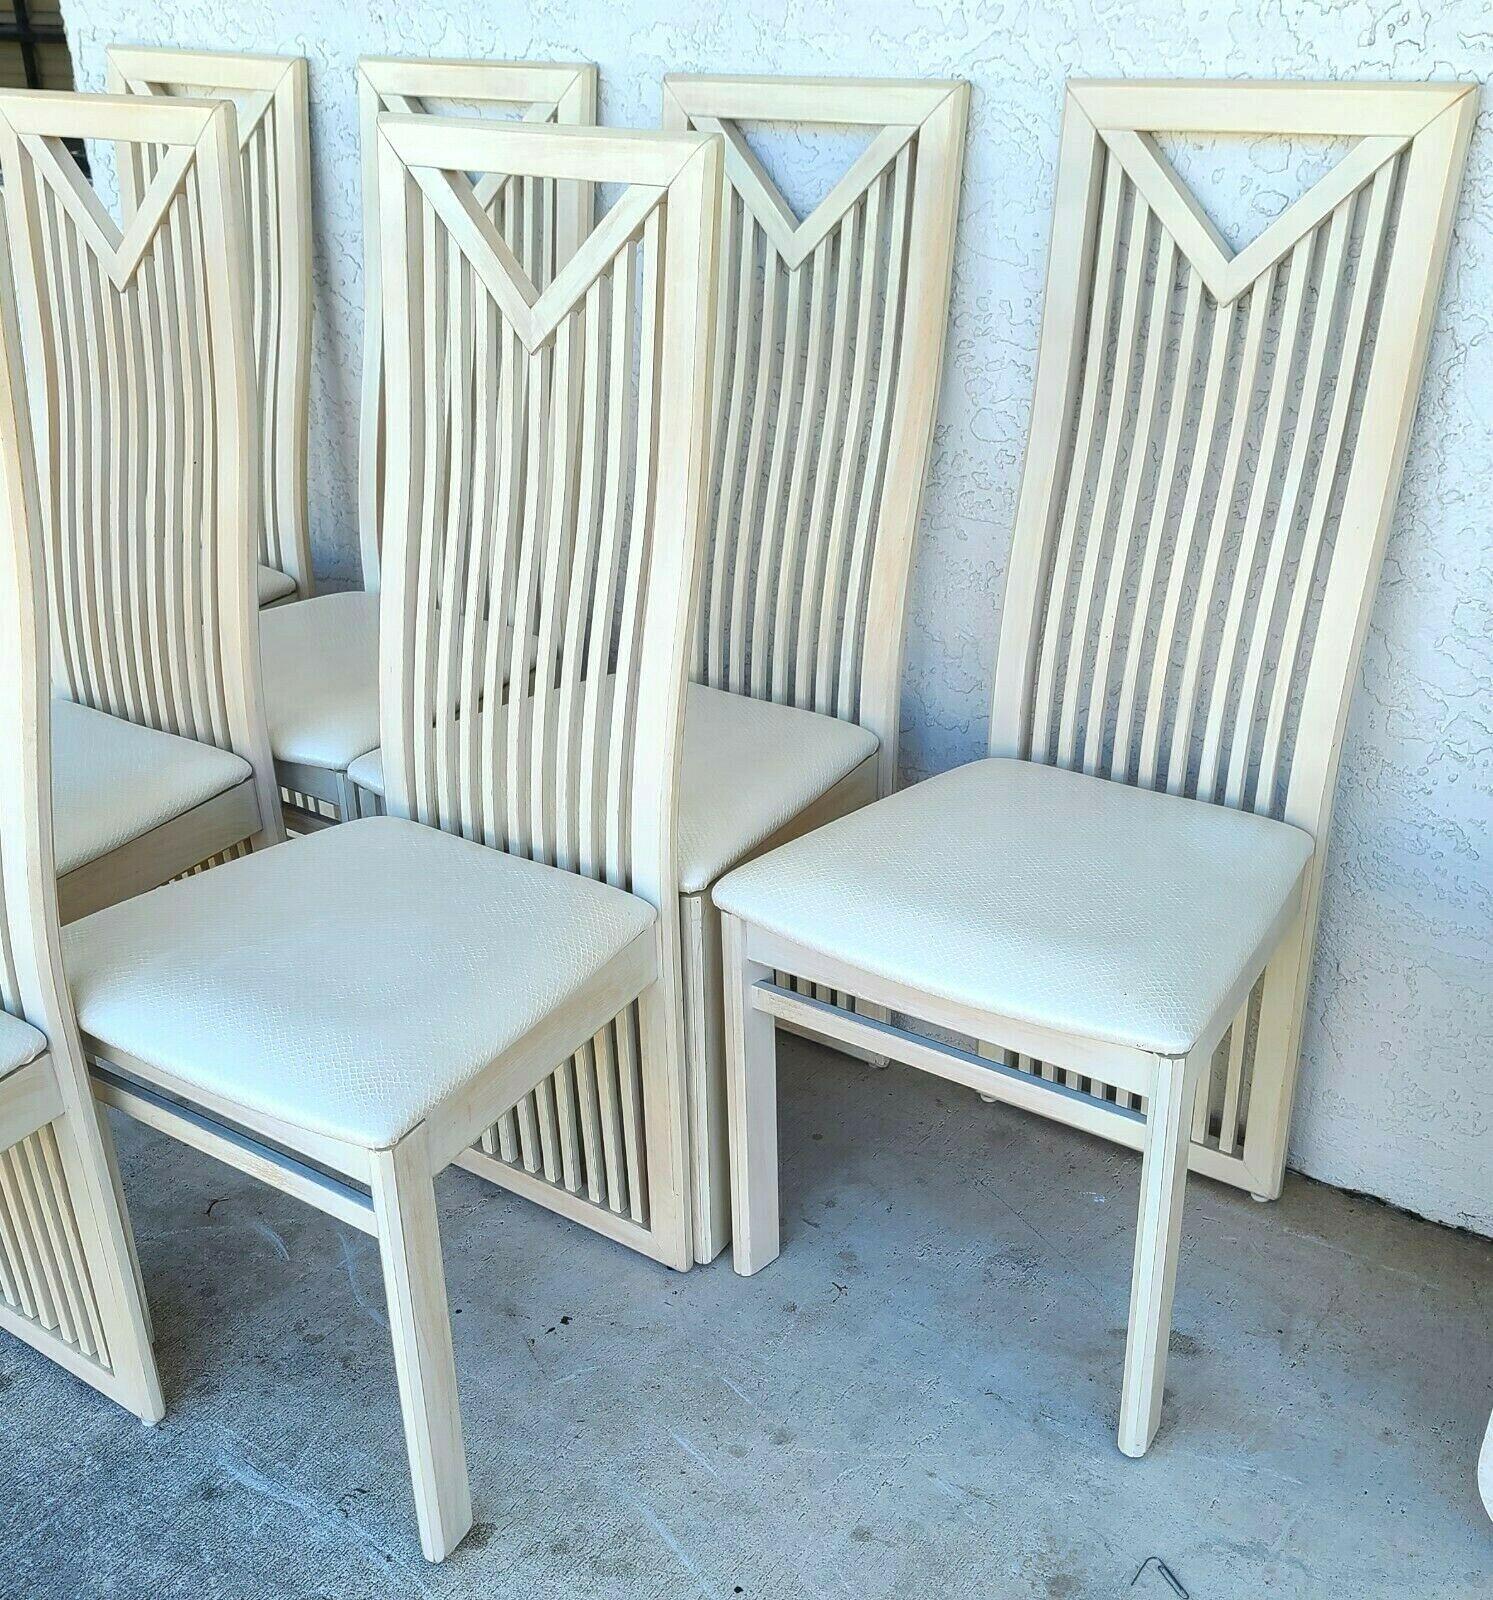 Offrant l'une de nos récentes acquisitions de meubles fins Palm Beach Estate de A 
Ensemble de 7 chaises de salle à manger italiennes par S.p.A. Tonon 
Finition en bois clair et sièges en vinyle gaufré résistant aux taches.

Mesures